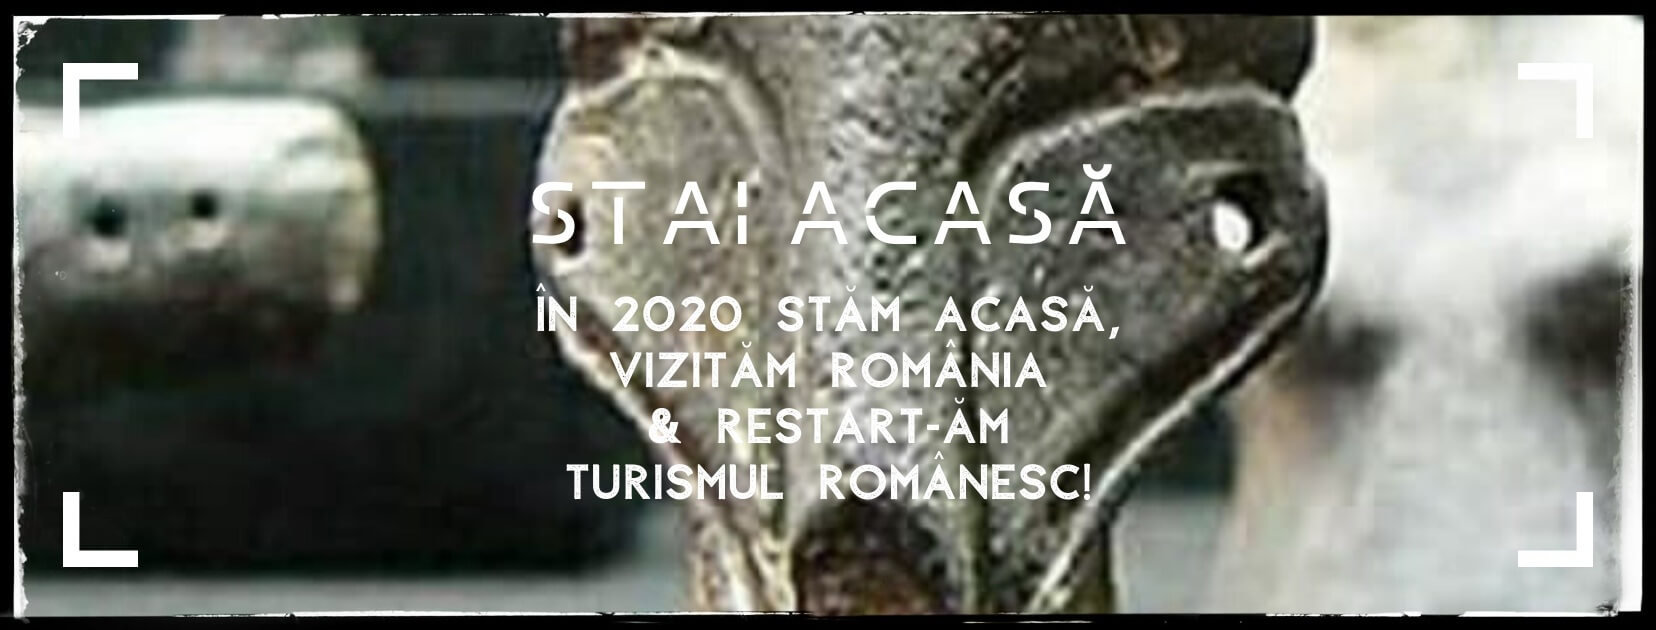 Timișoara Capitală Culturală EUROPEANĂ 2021 Cultura Vinča Turdaş Povestea Locurilor